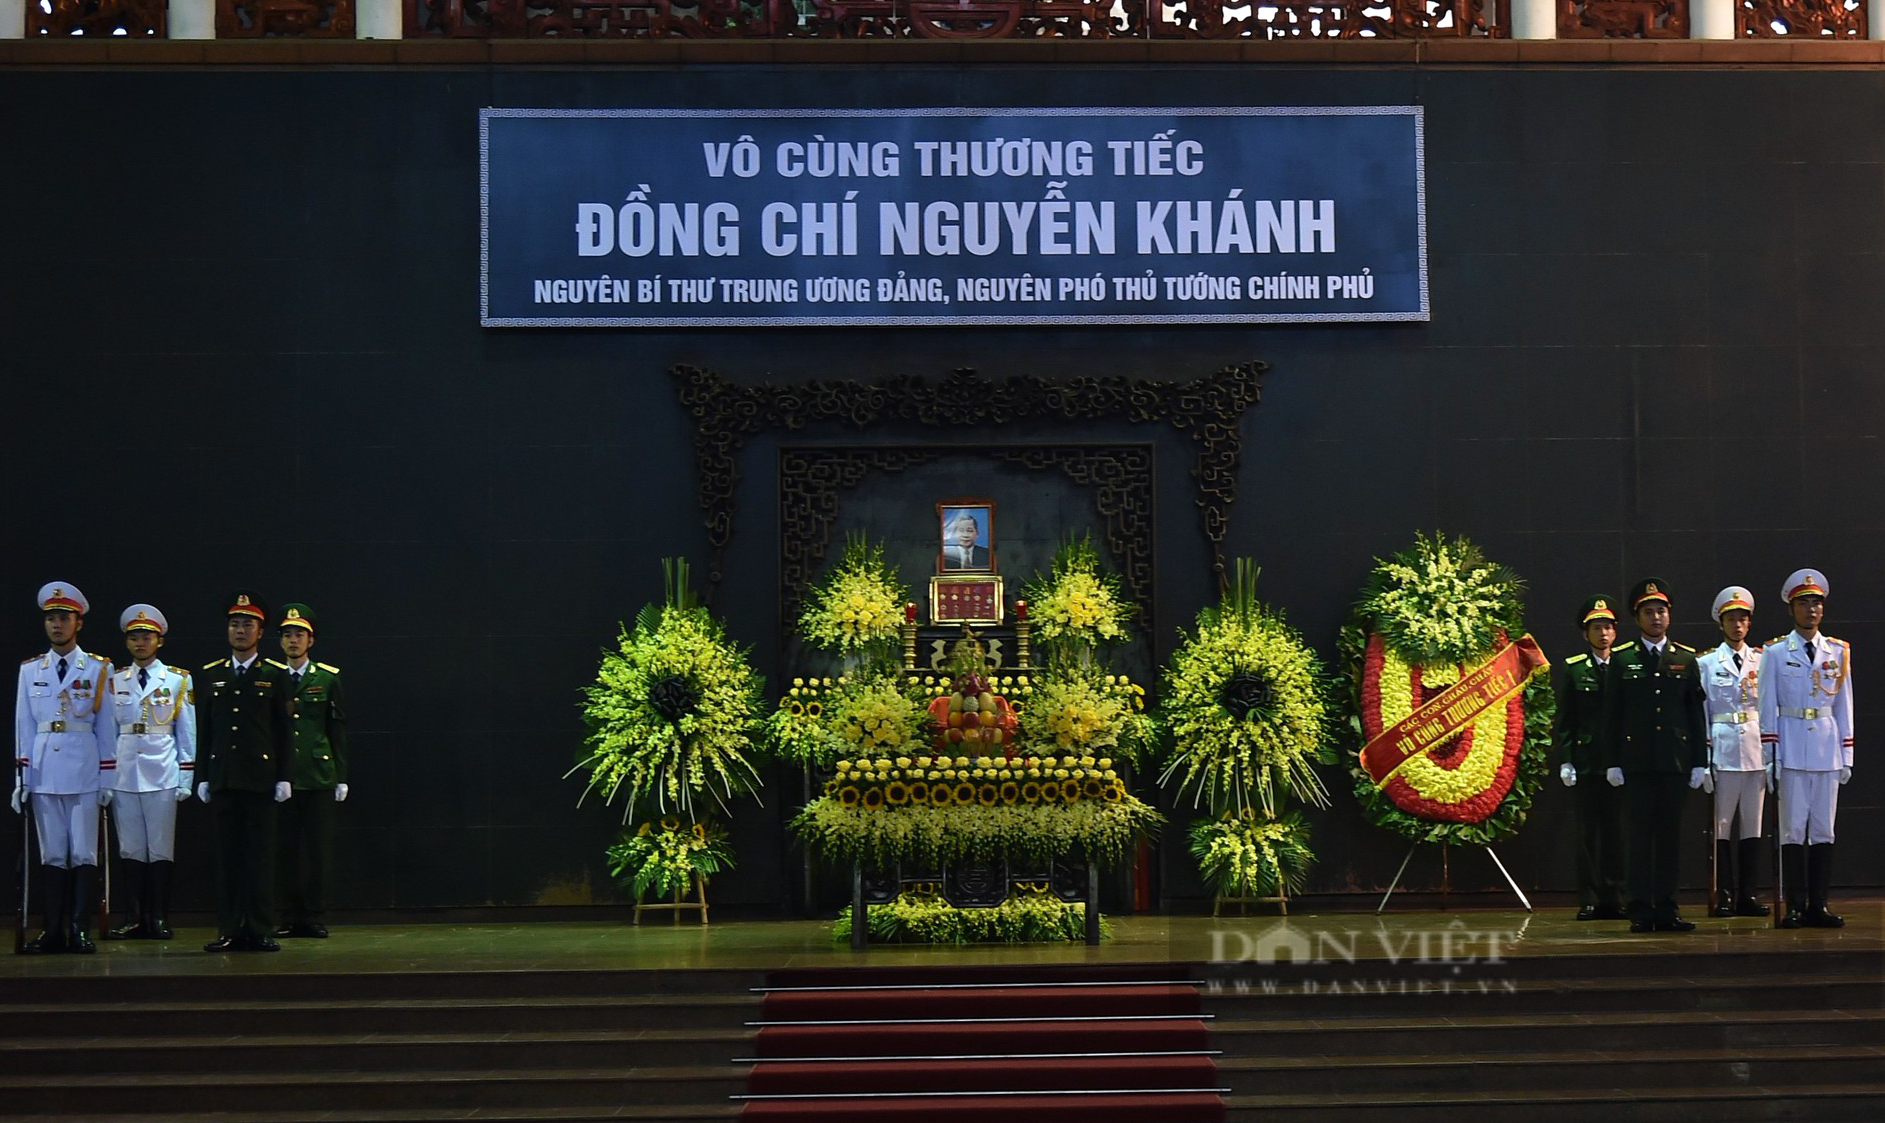 Lãnh đạo Đảng, Nhà nước viếng nguyên Phó Thủ tướng Nguyễn Khánh - Ảnh 1.